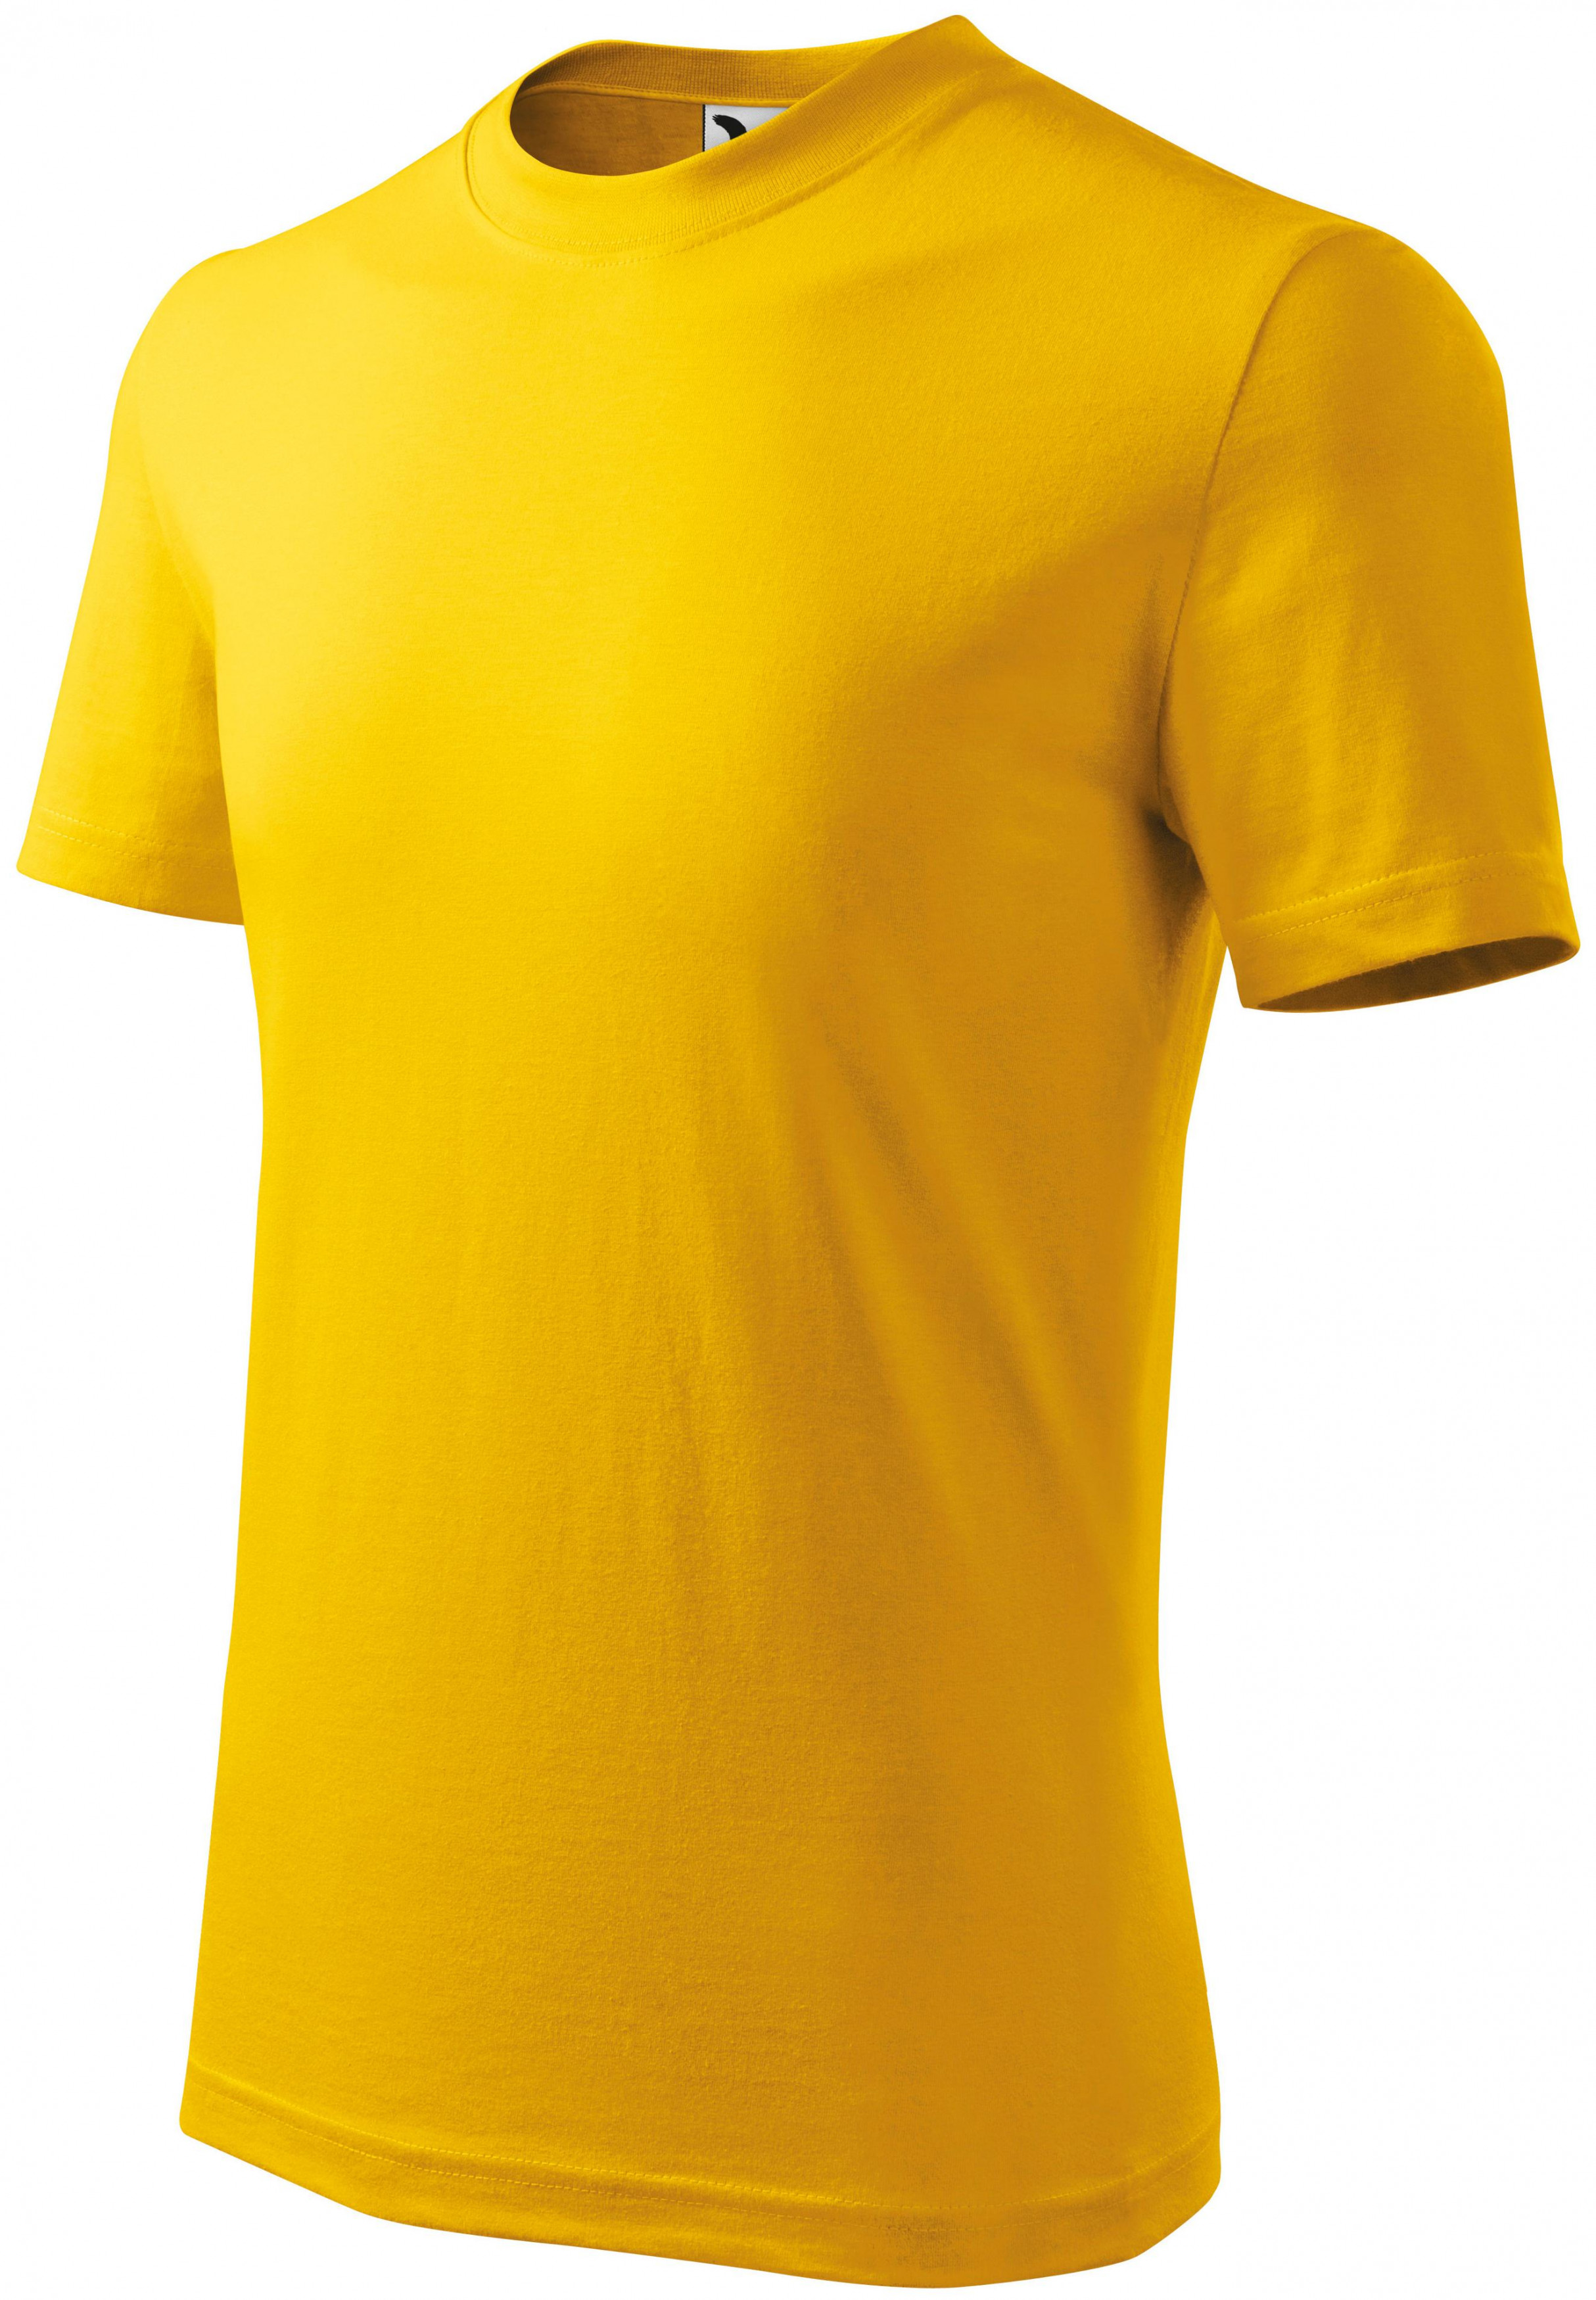 Detské tričko jednoduché, žltá, 158cm / 12rokov